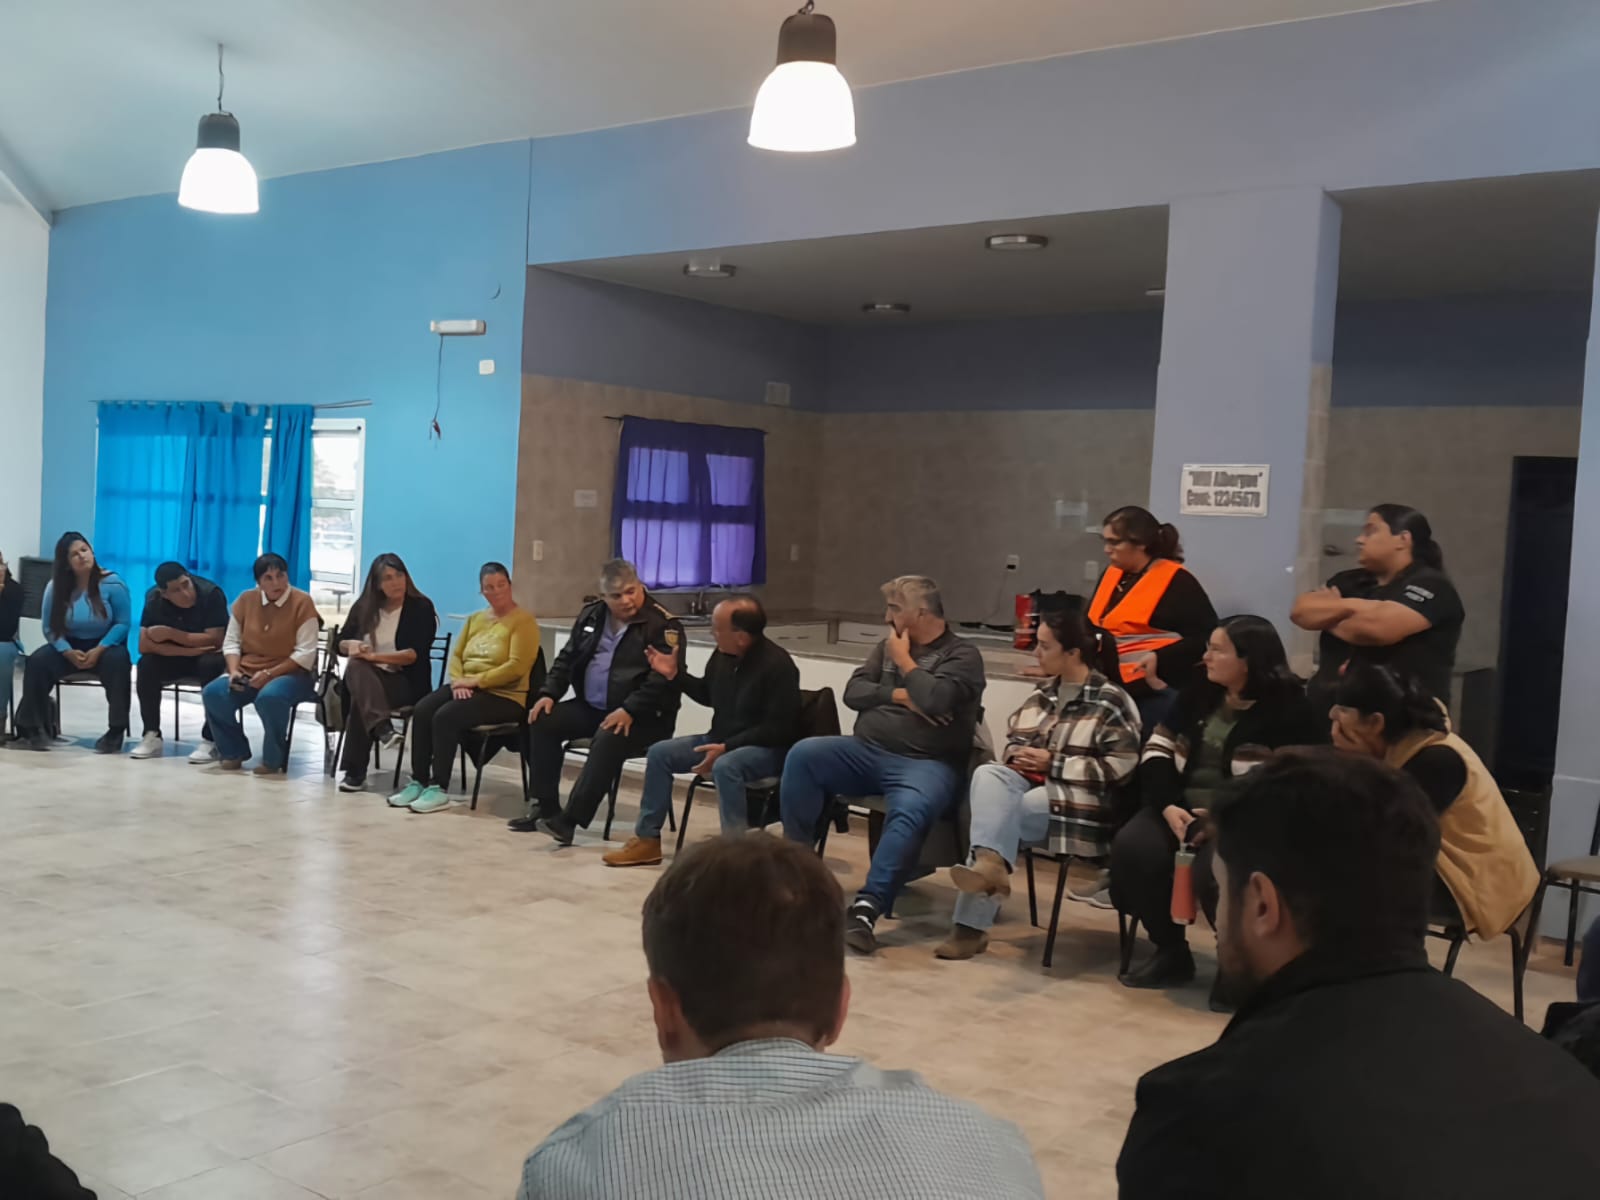 Seguridad integral en el oeste pampeano: reuniones de trabajo y diálogo con autoridades locales 